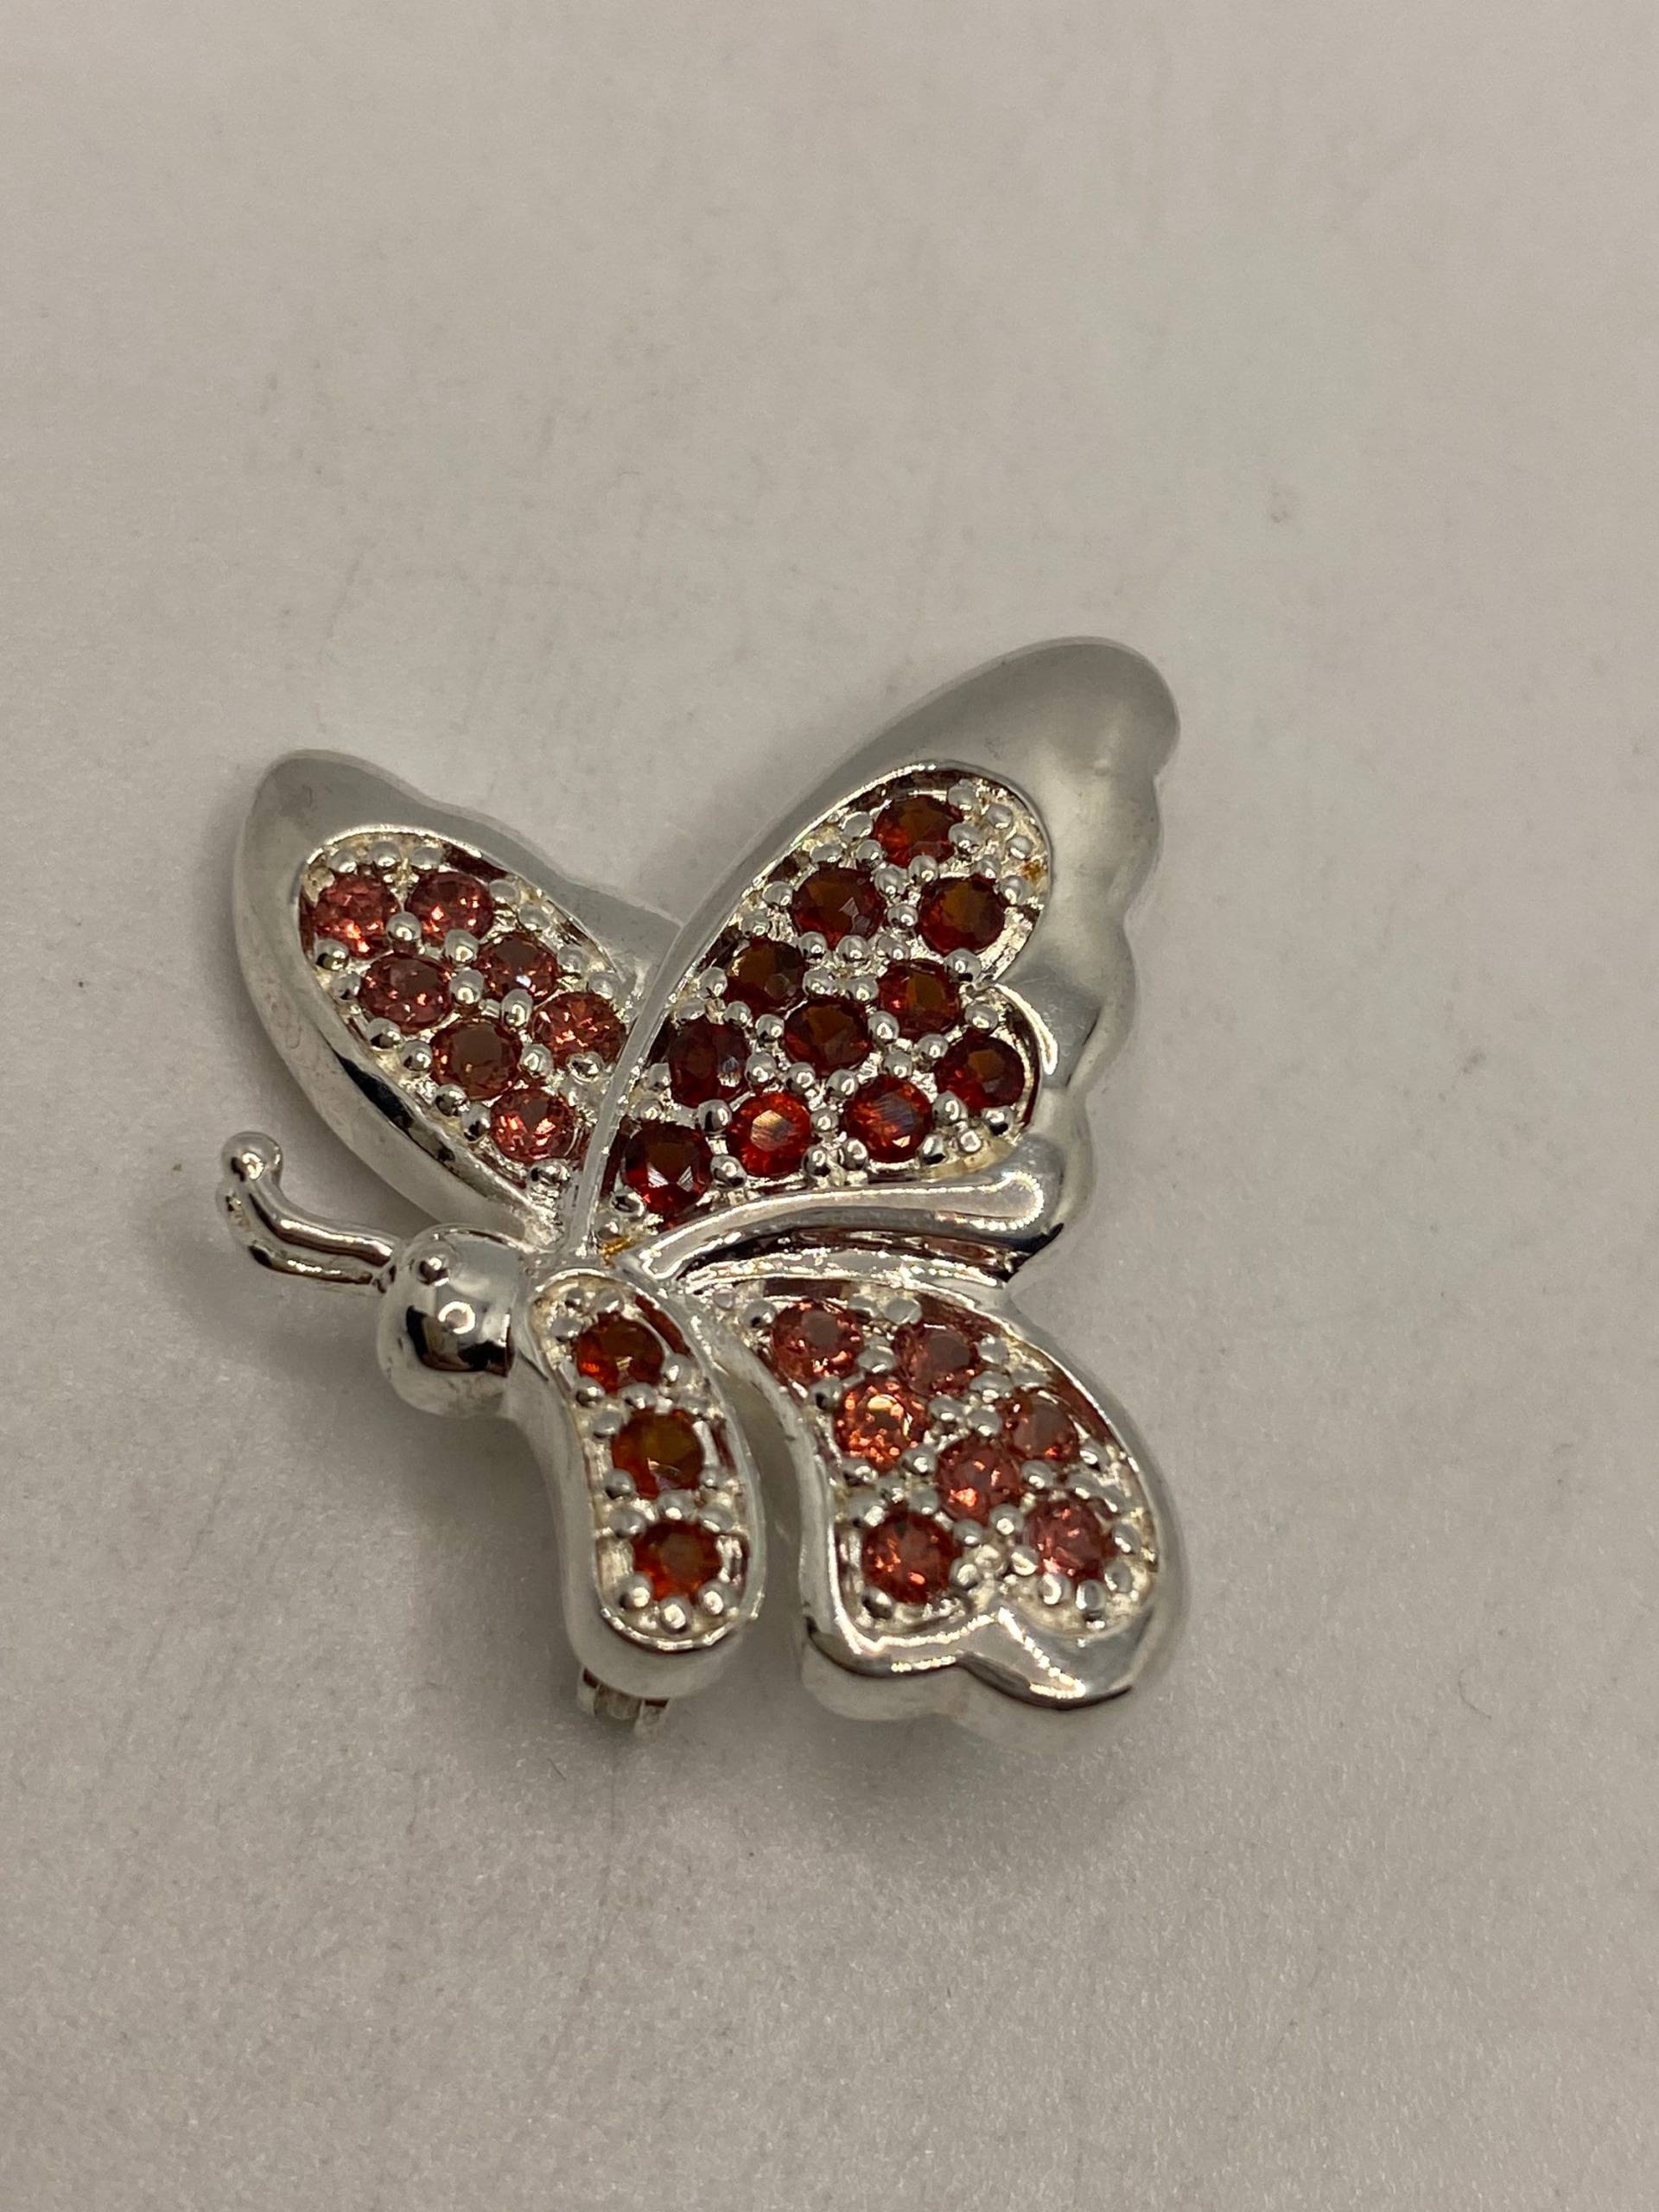 Vintage Roter Granat Pin 925 Sterling Silber Schmetterling Brosche von NemesisJewelryNYC